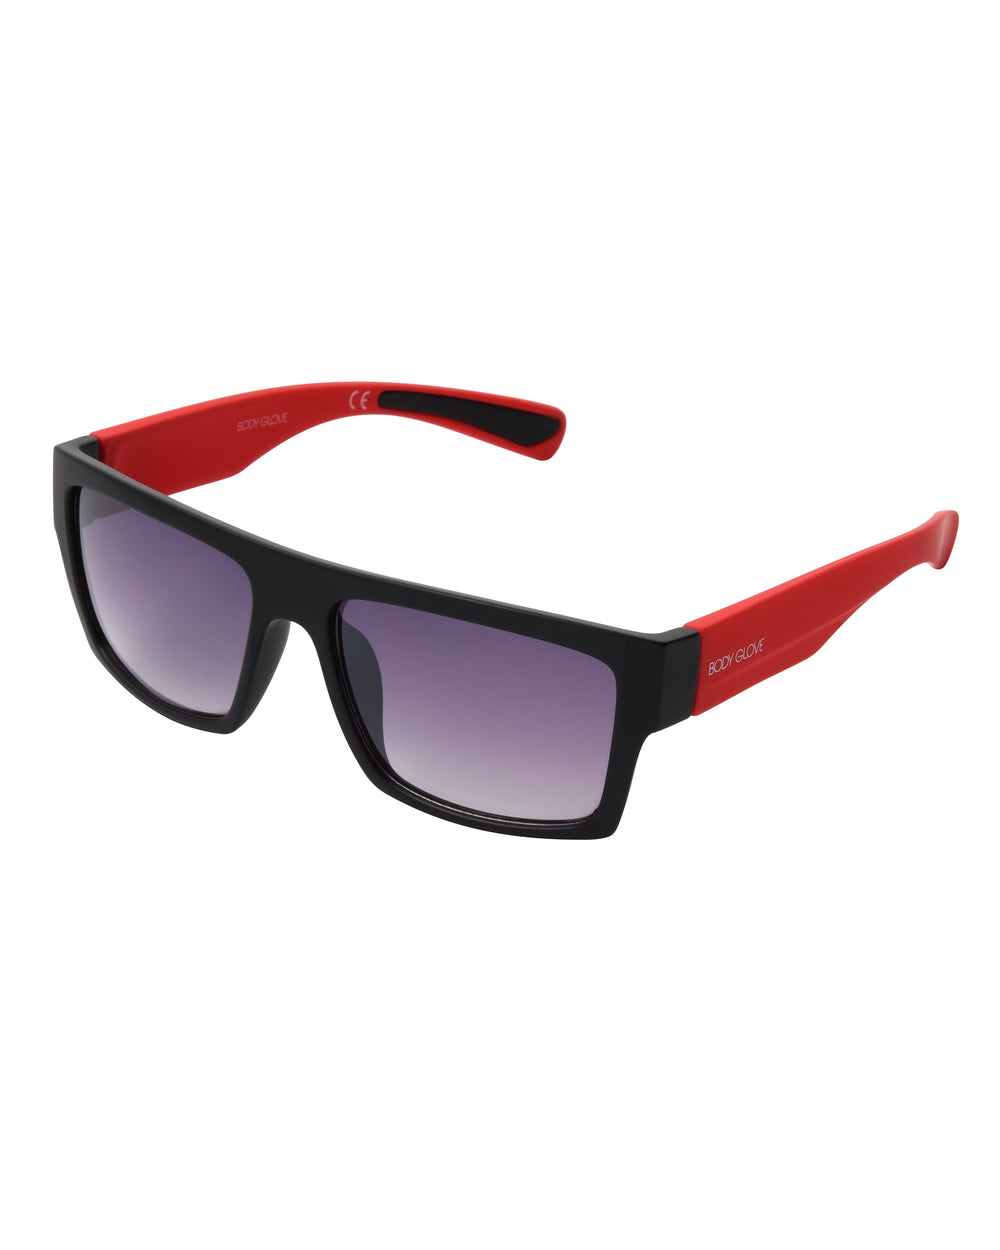 Reggie Rectangular Sunglasses - Black/Red